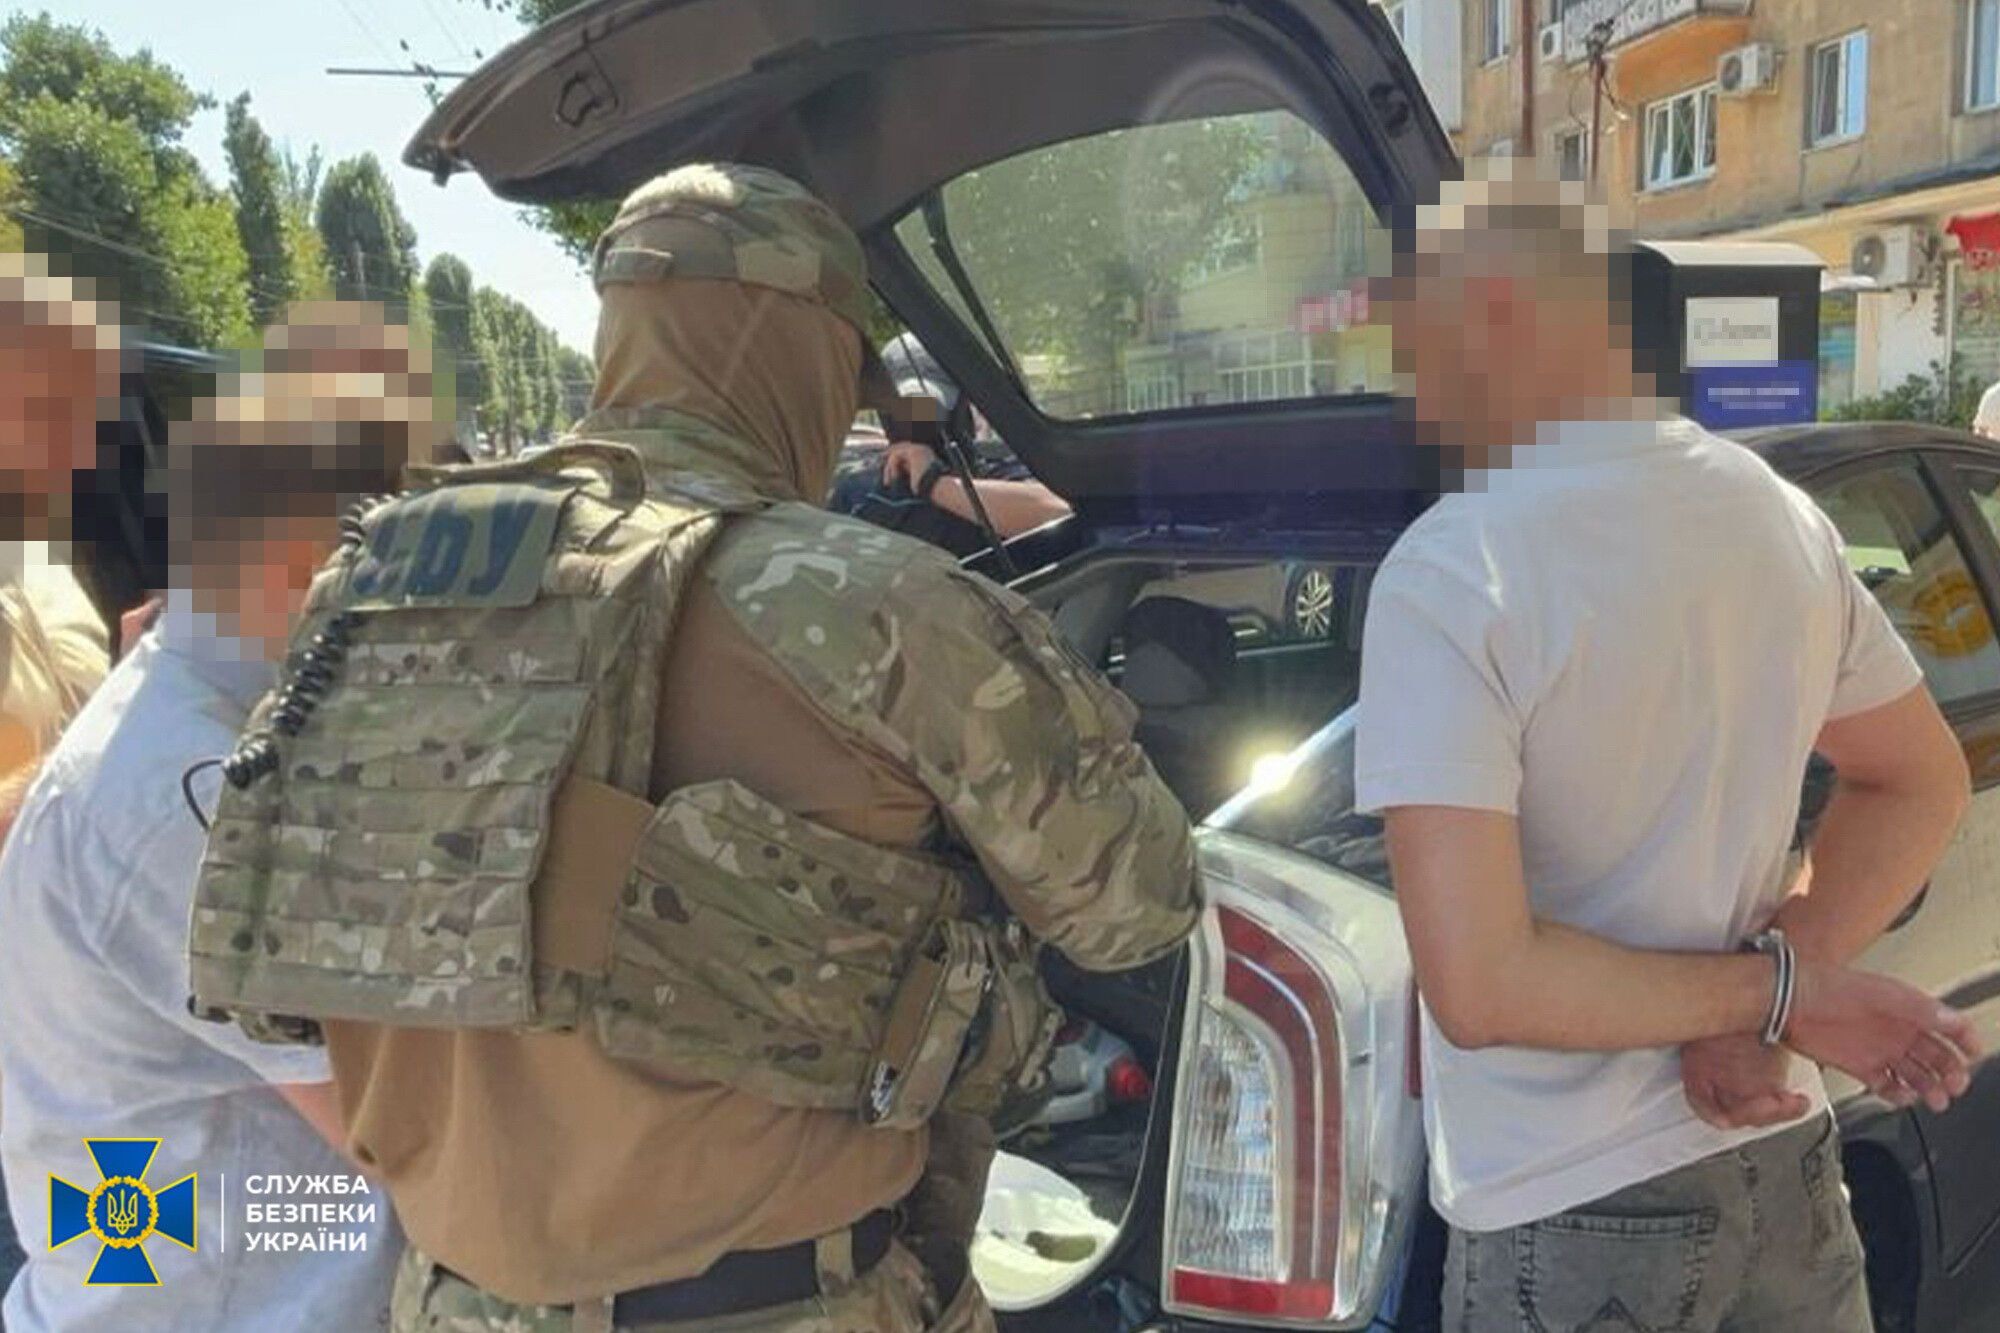 СБУ задержала вражеского информатора, который шпионил за защитниками Одессы: он действовал "под прикрытием". Фото